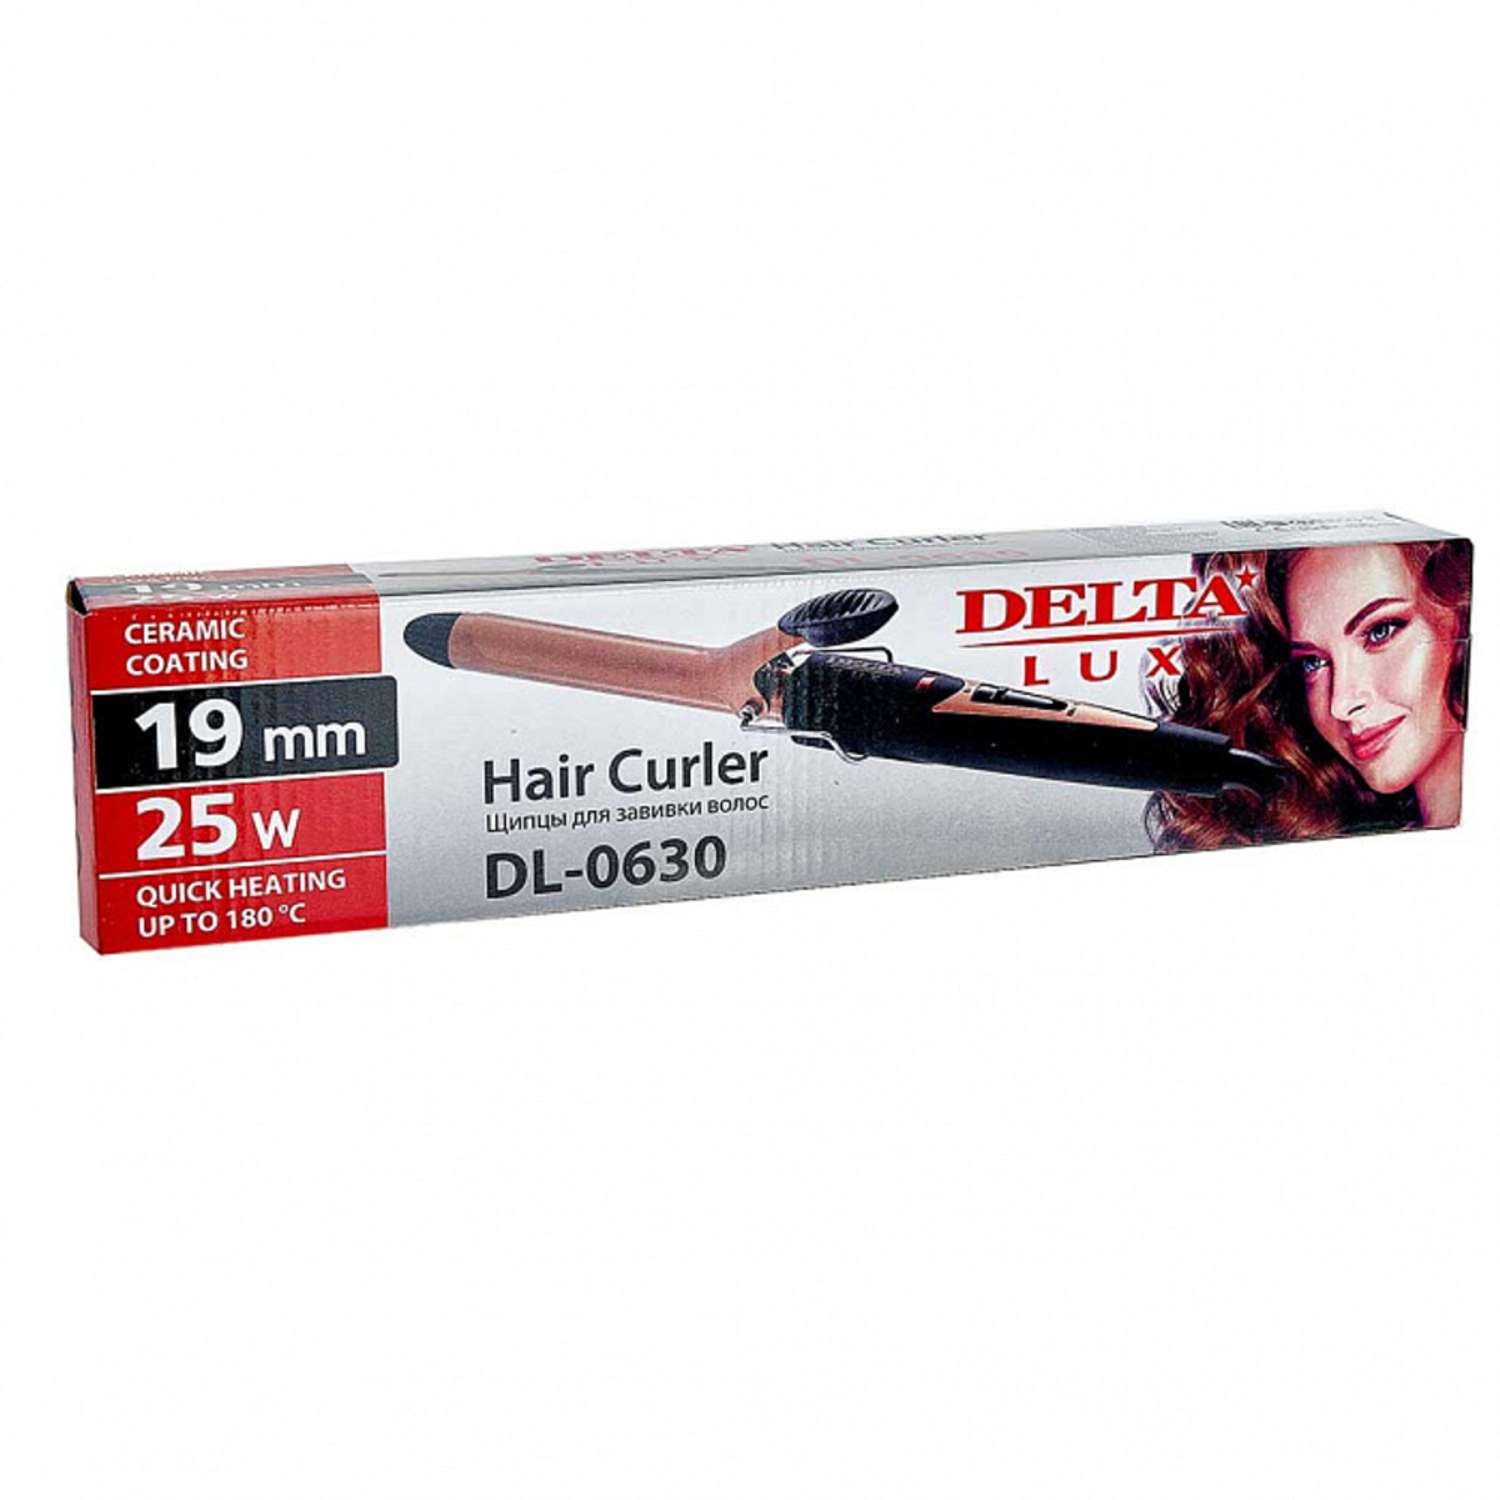 Стайлер для завивки волос Delta Lux DL-0630 черный с бронзовым керамическое покрытием d 19 мм 25 Вт - фото 4